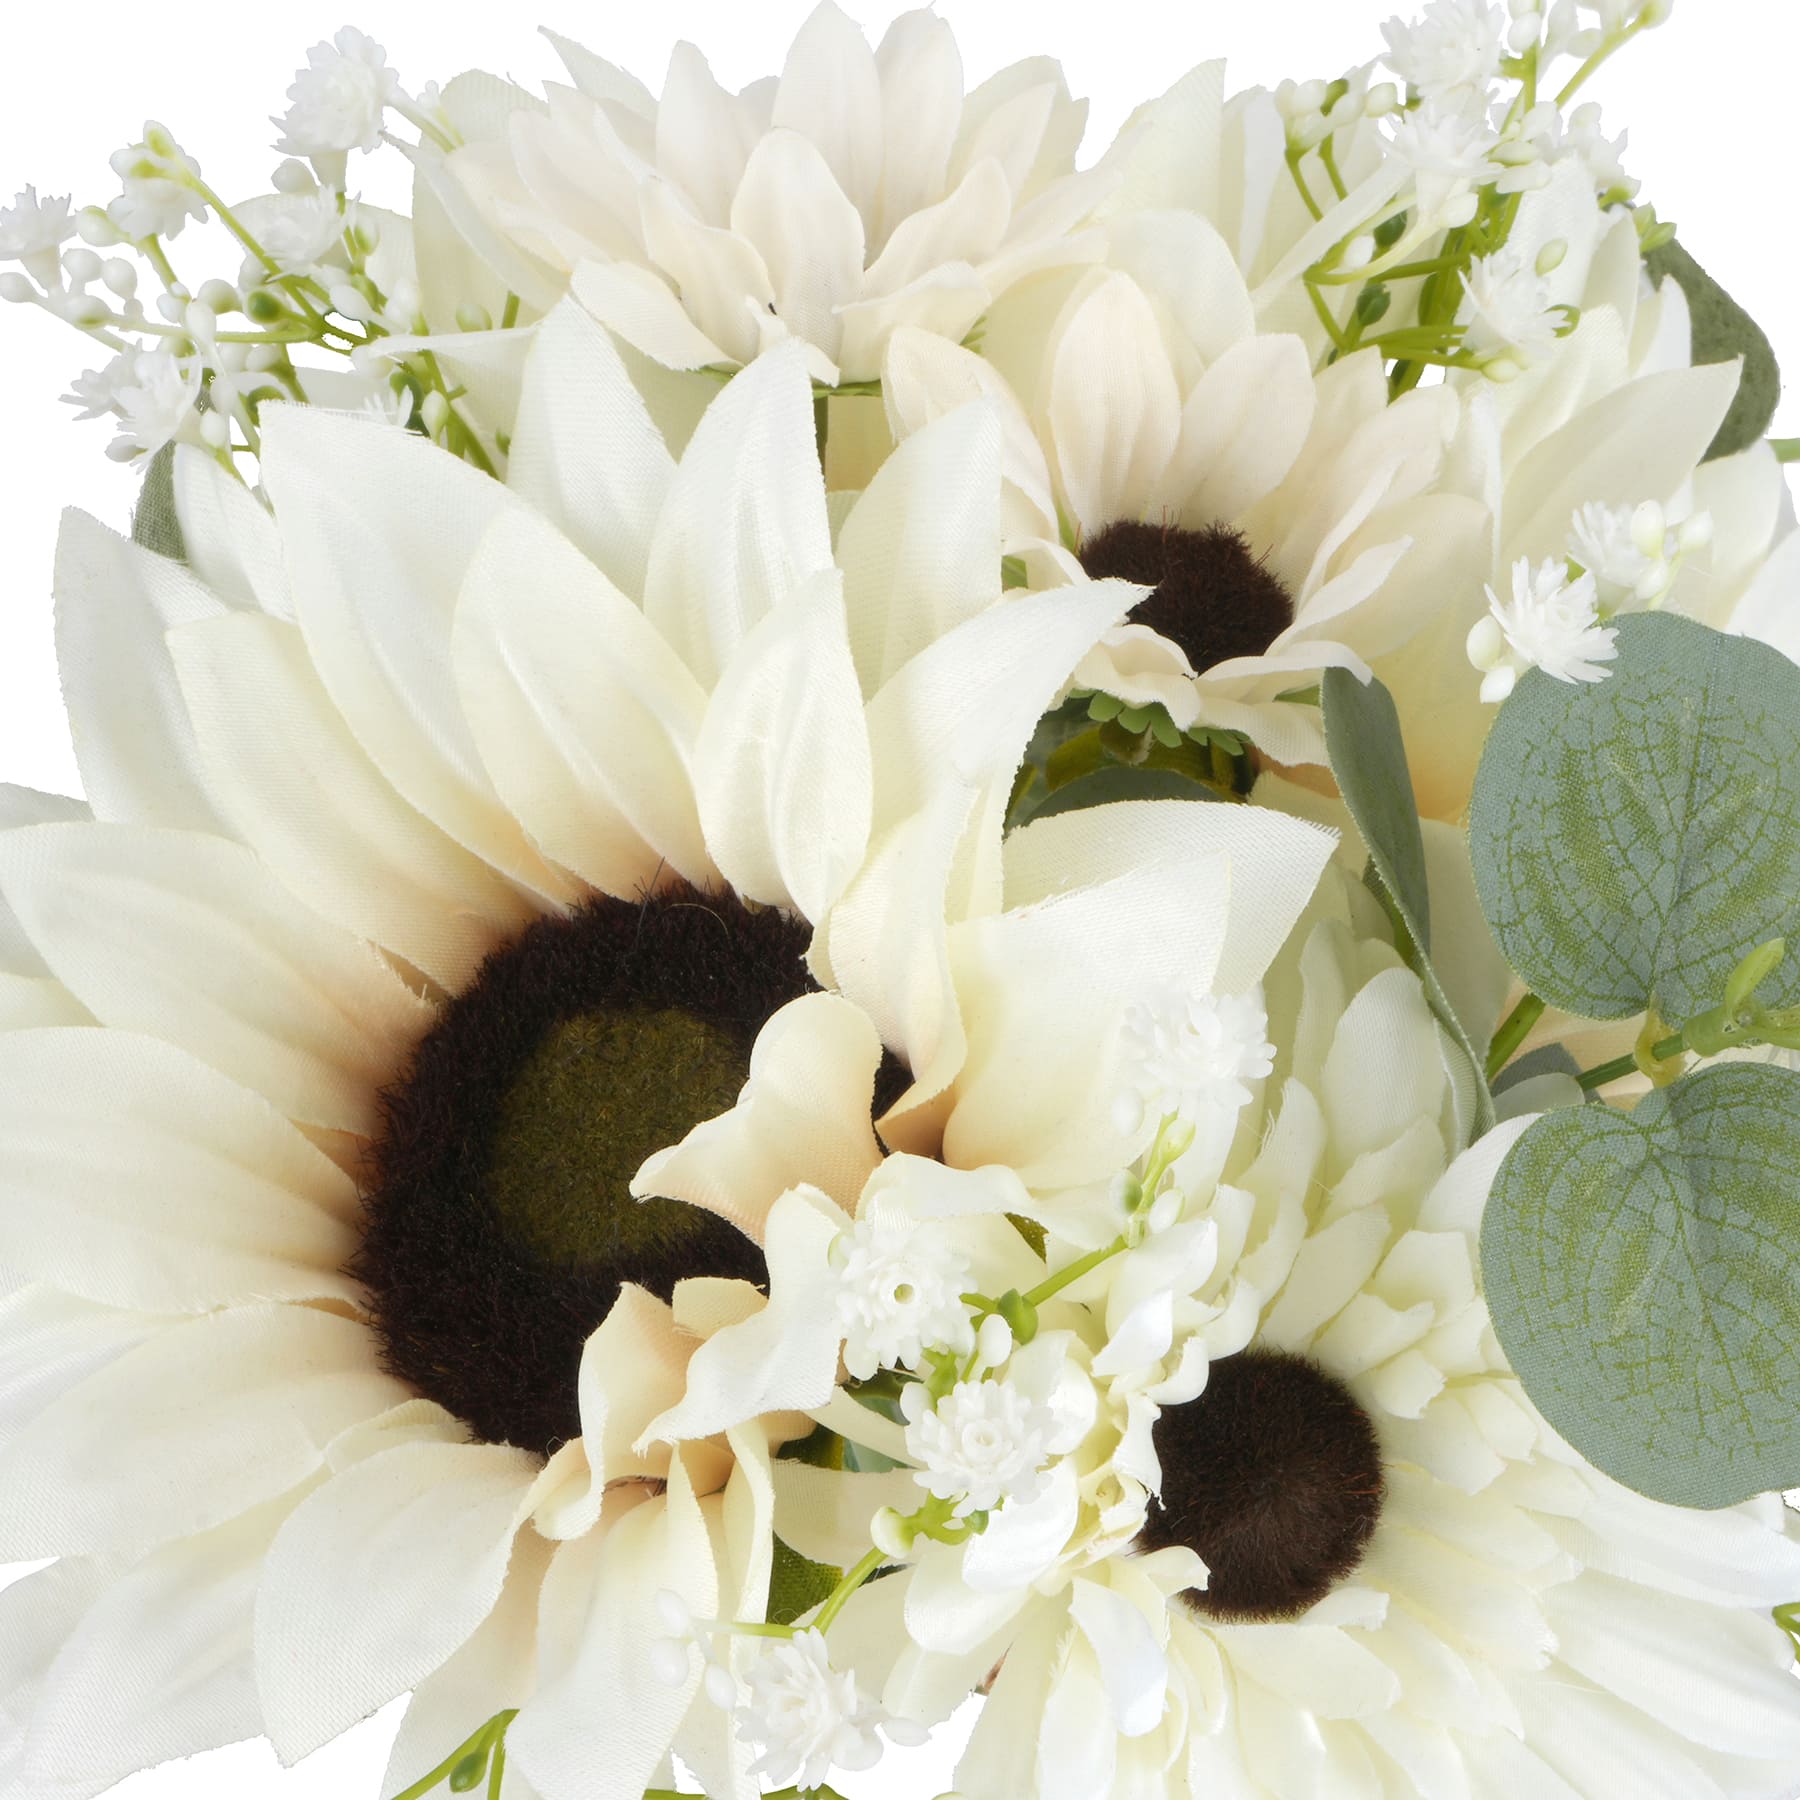 White Sunflower &#x26; Daisy Bundle by Ashland&#xAE;